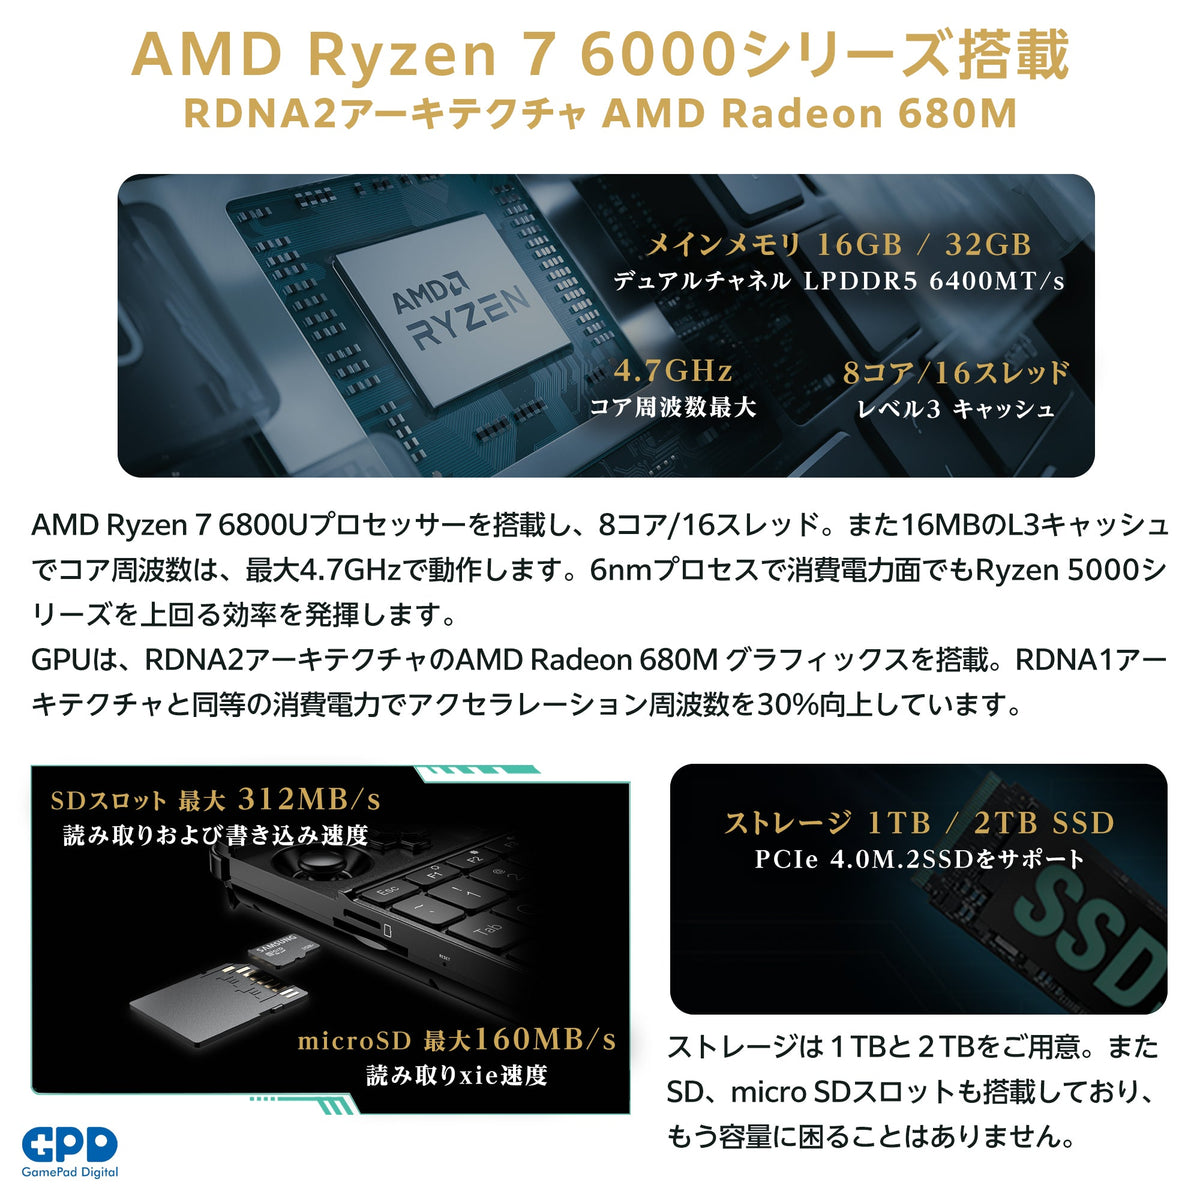 リファービッシュ品》GPD WIN Max 2 Ryzen 7 6800U 32GB/1TB国内正規版 – GPDダイレクト